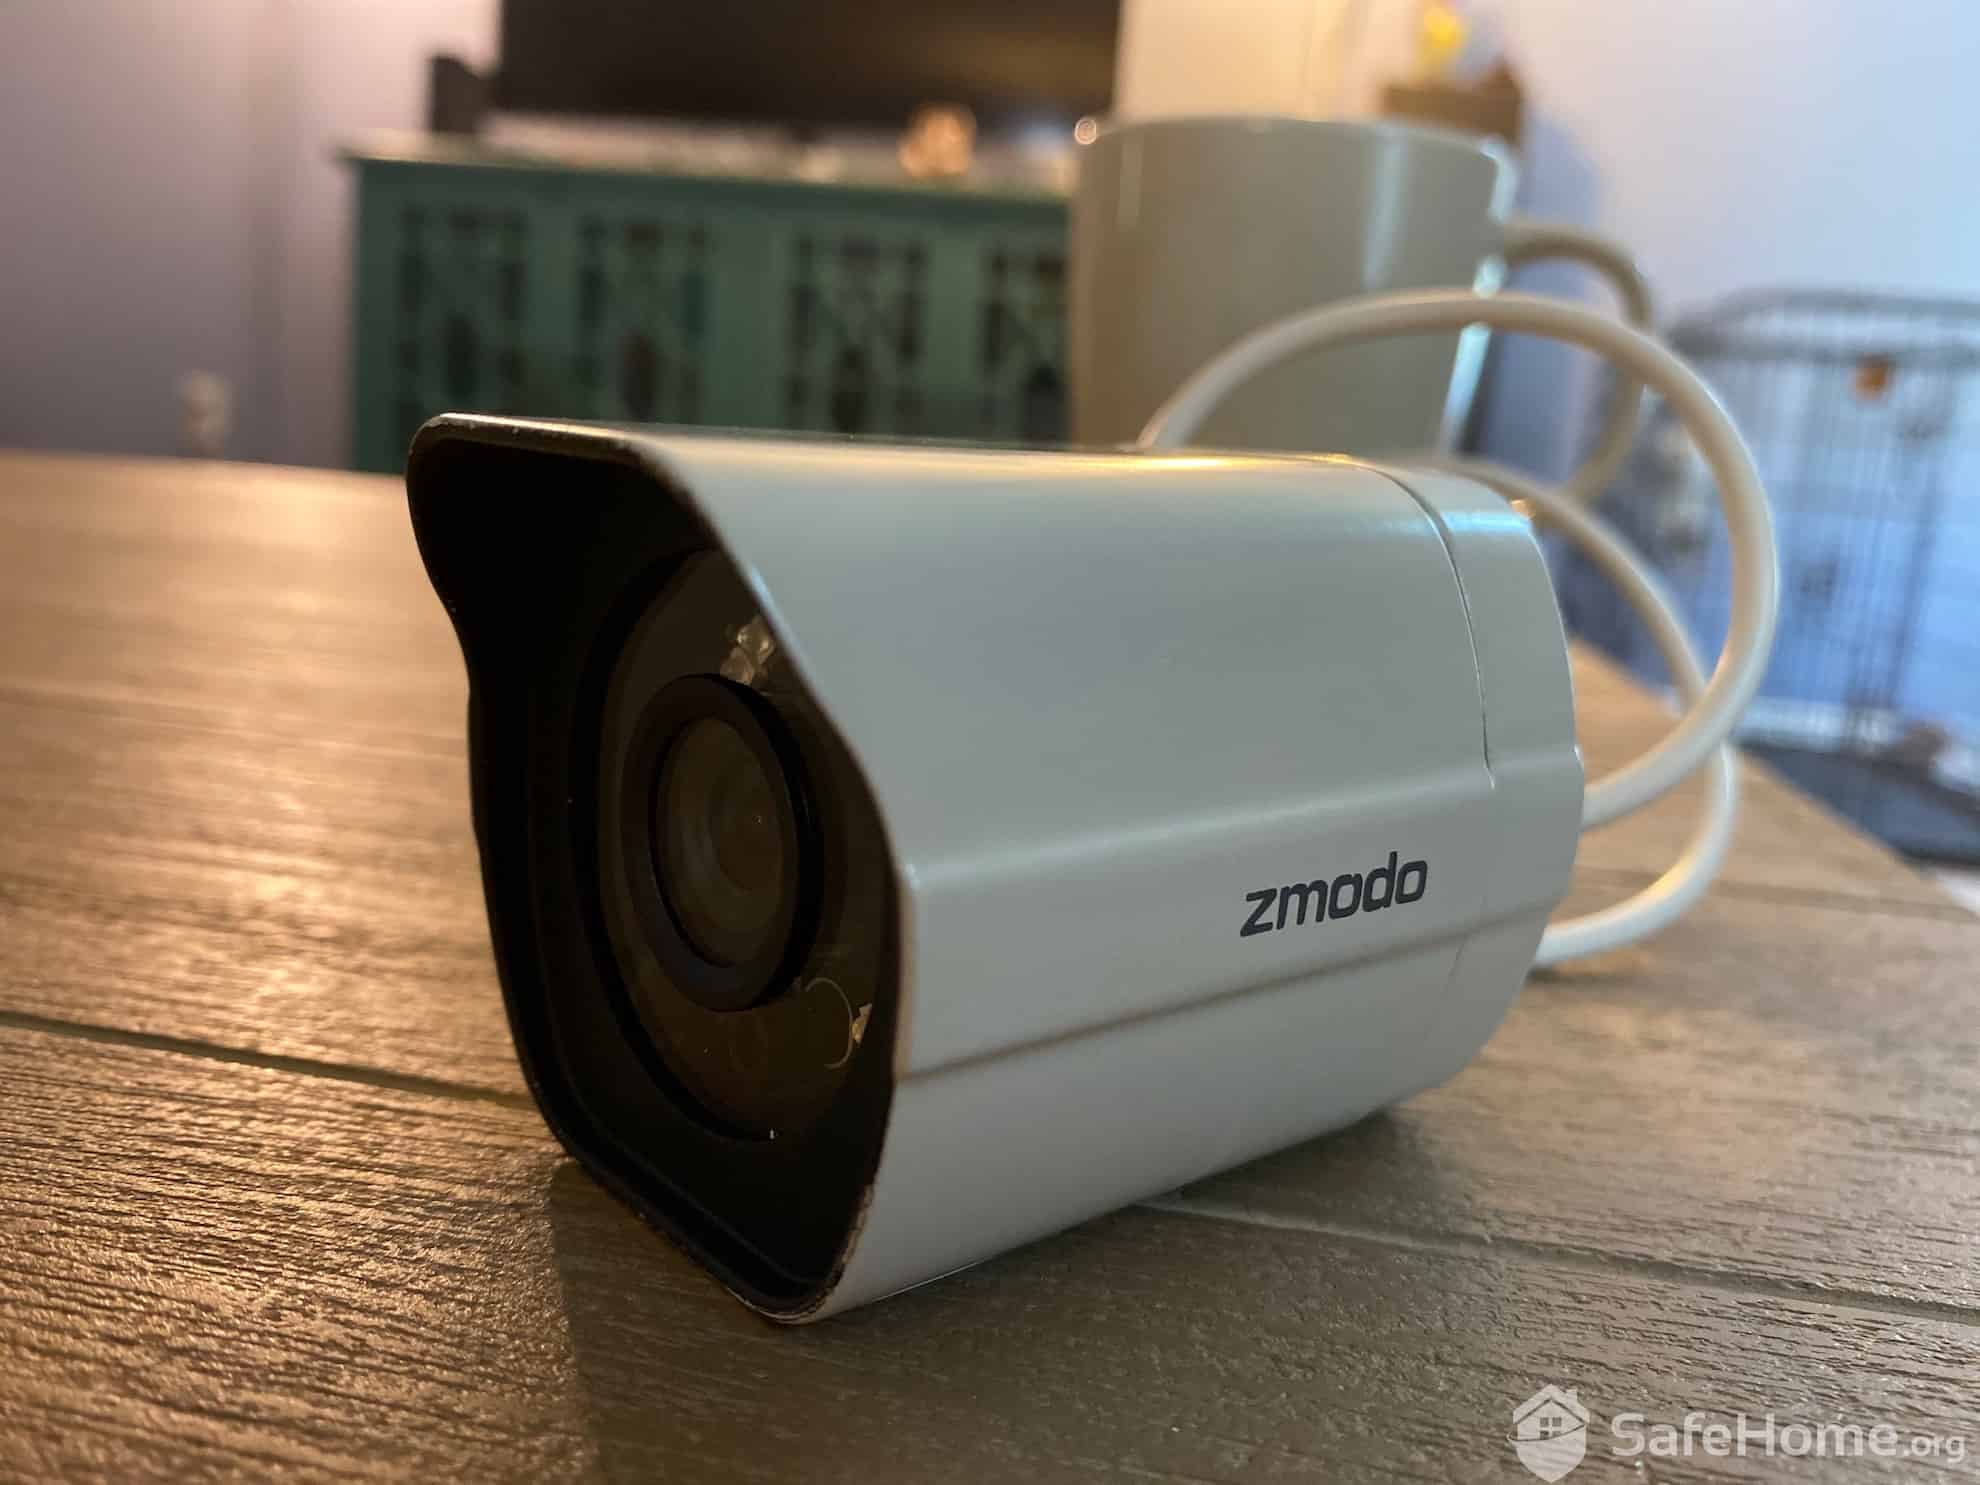 Zmodo 1080p Indoor/Outdoor Wi-Fi Camera